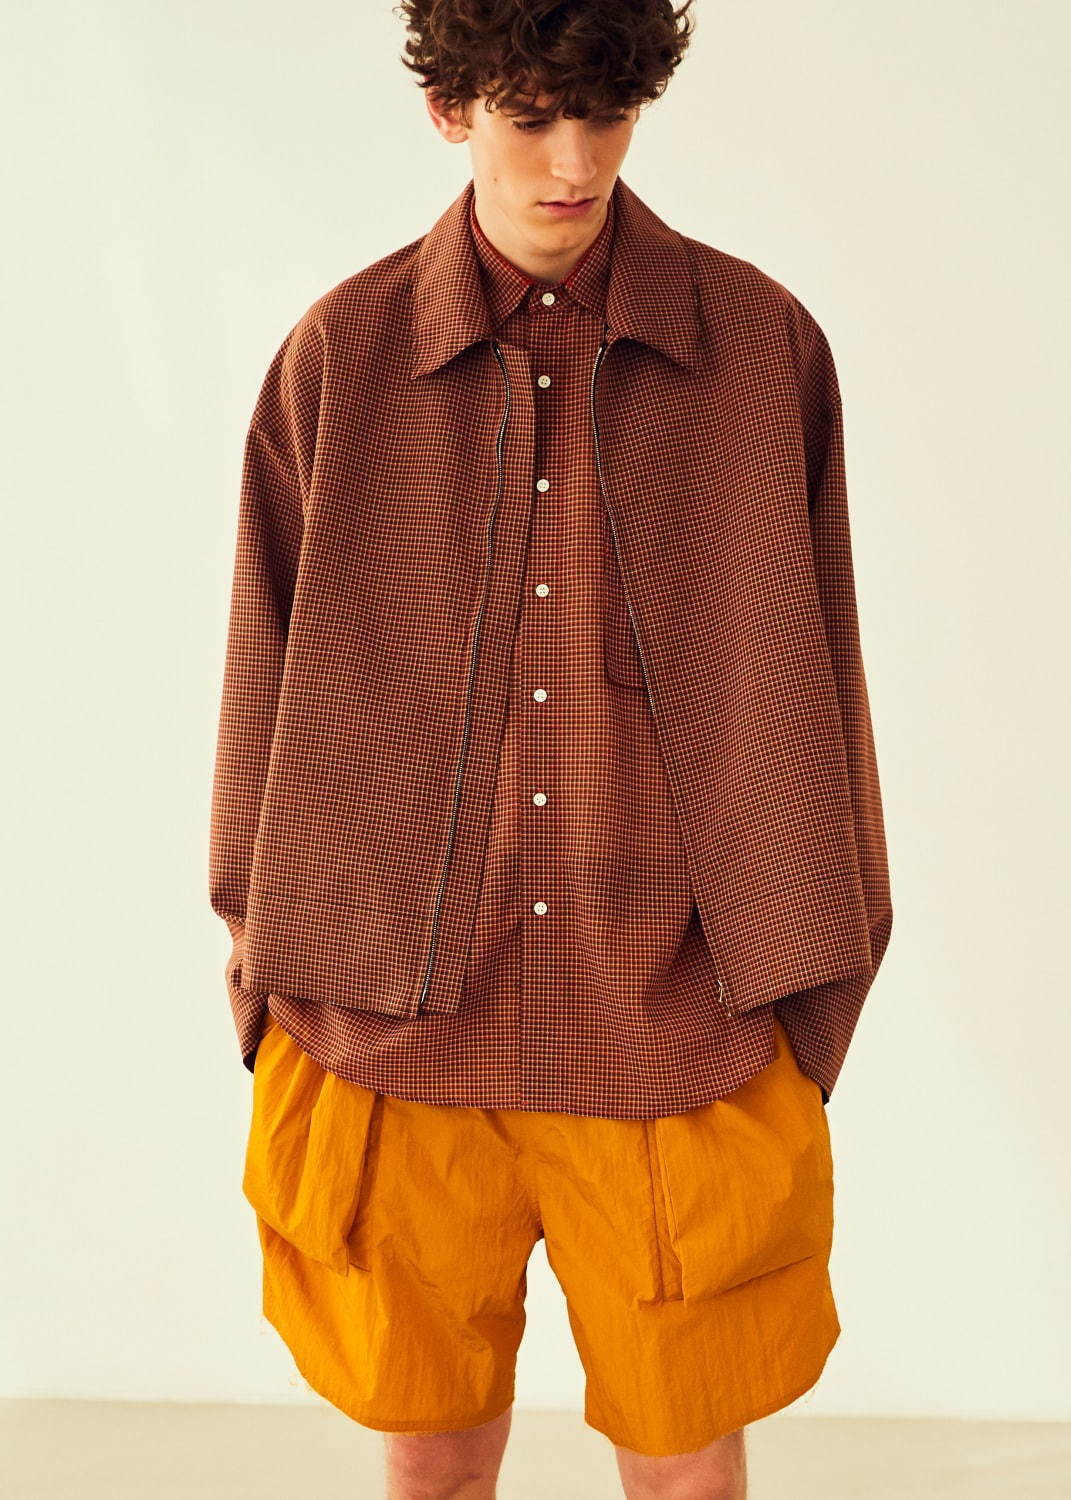 写真4 42 メンズ オレンジのハーフパンツのコーディネート着用 コレクションルックギャラリー ファッションプレス